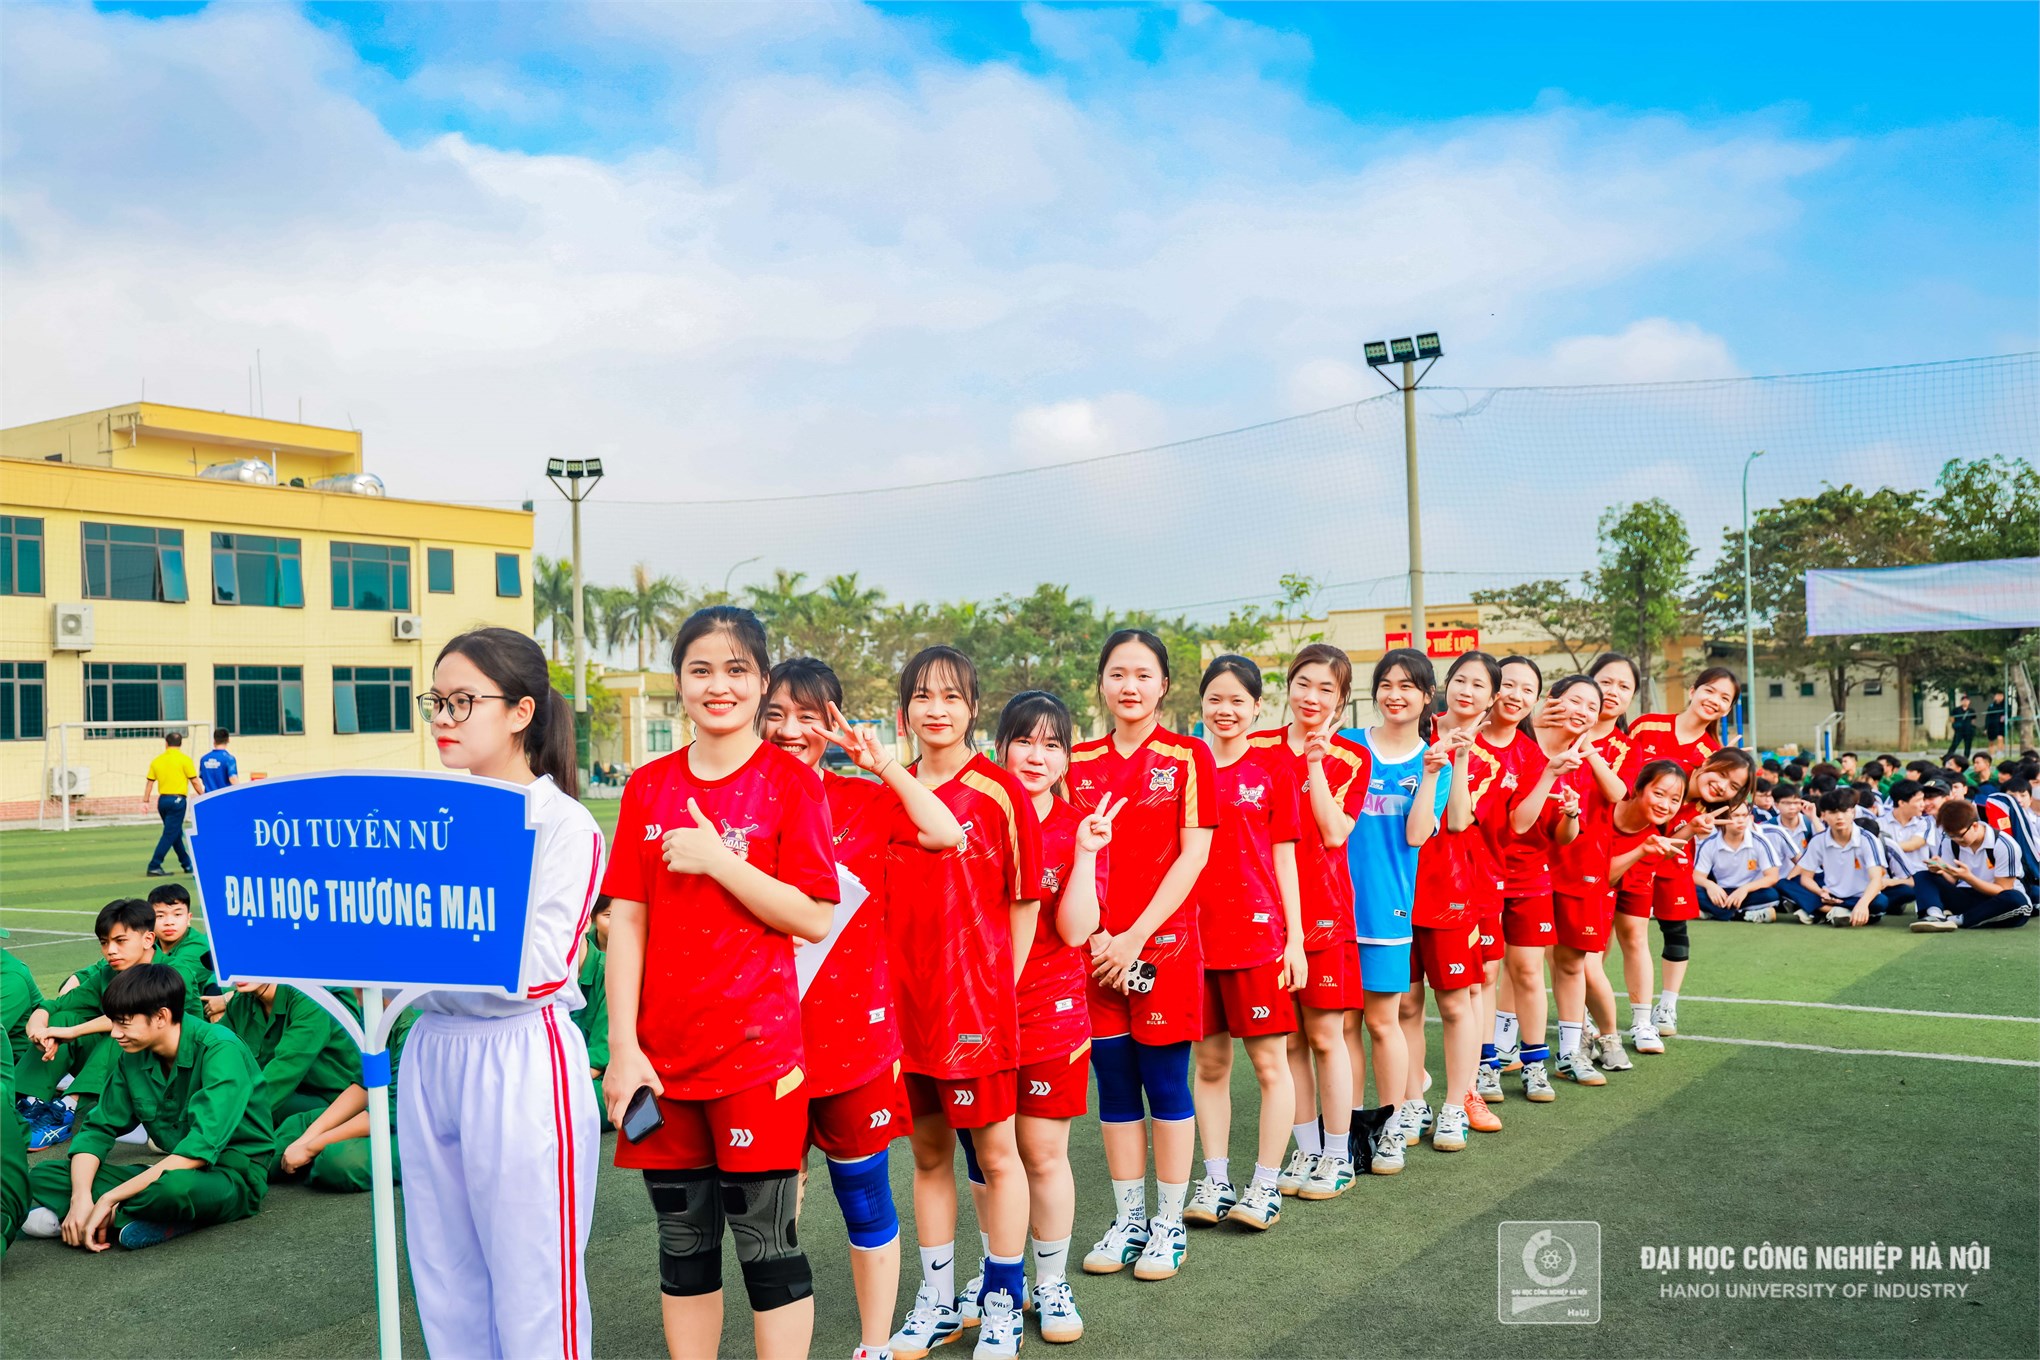 Sôi động và hấp dẫn giải bóng ném sinh viên các trường đại học, học viện, cao đẳng và chuyên nghiệp khu vực Hà Nội